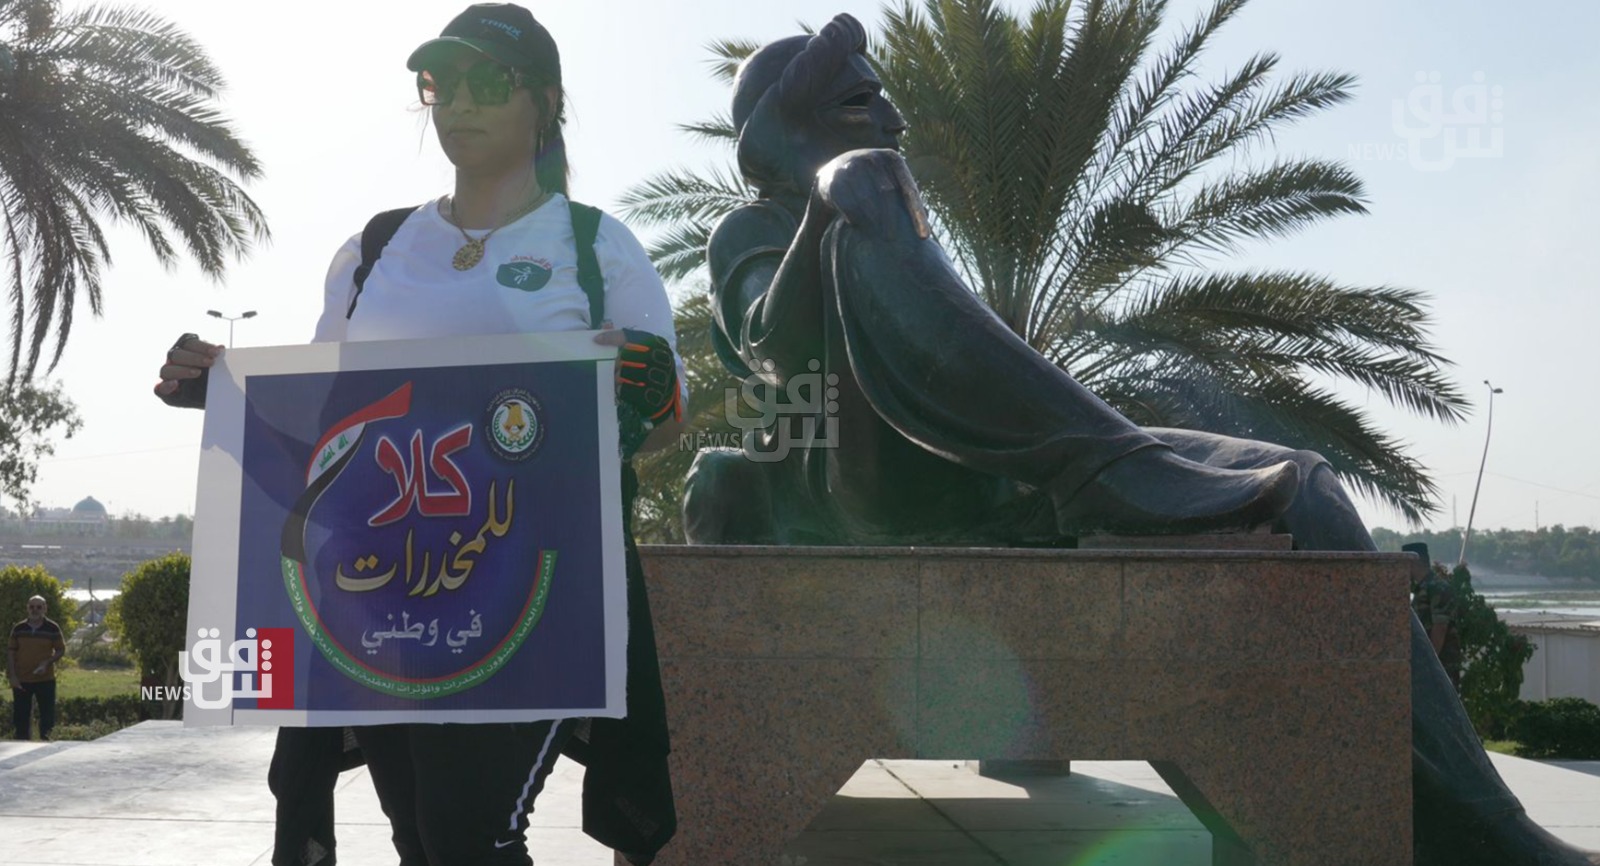 بغداد.. نساء يرفعن شعار "لا للمخدرات في وطني" في ماراثون للدراجات الهوائية (صور)